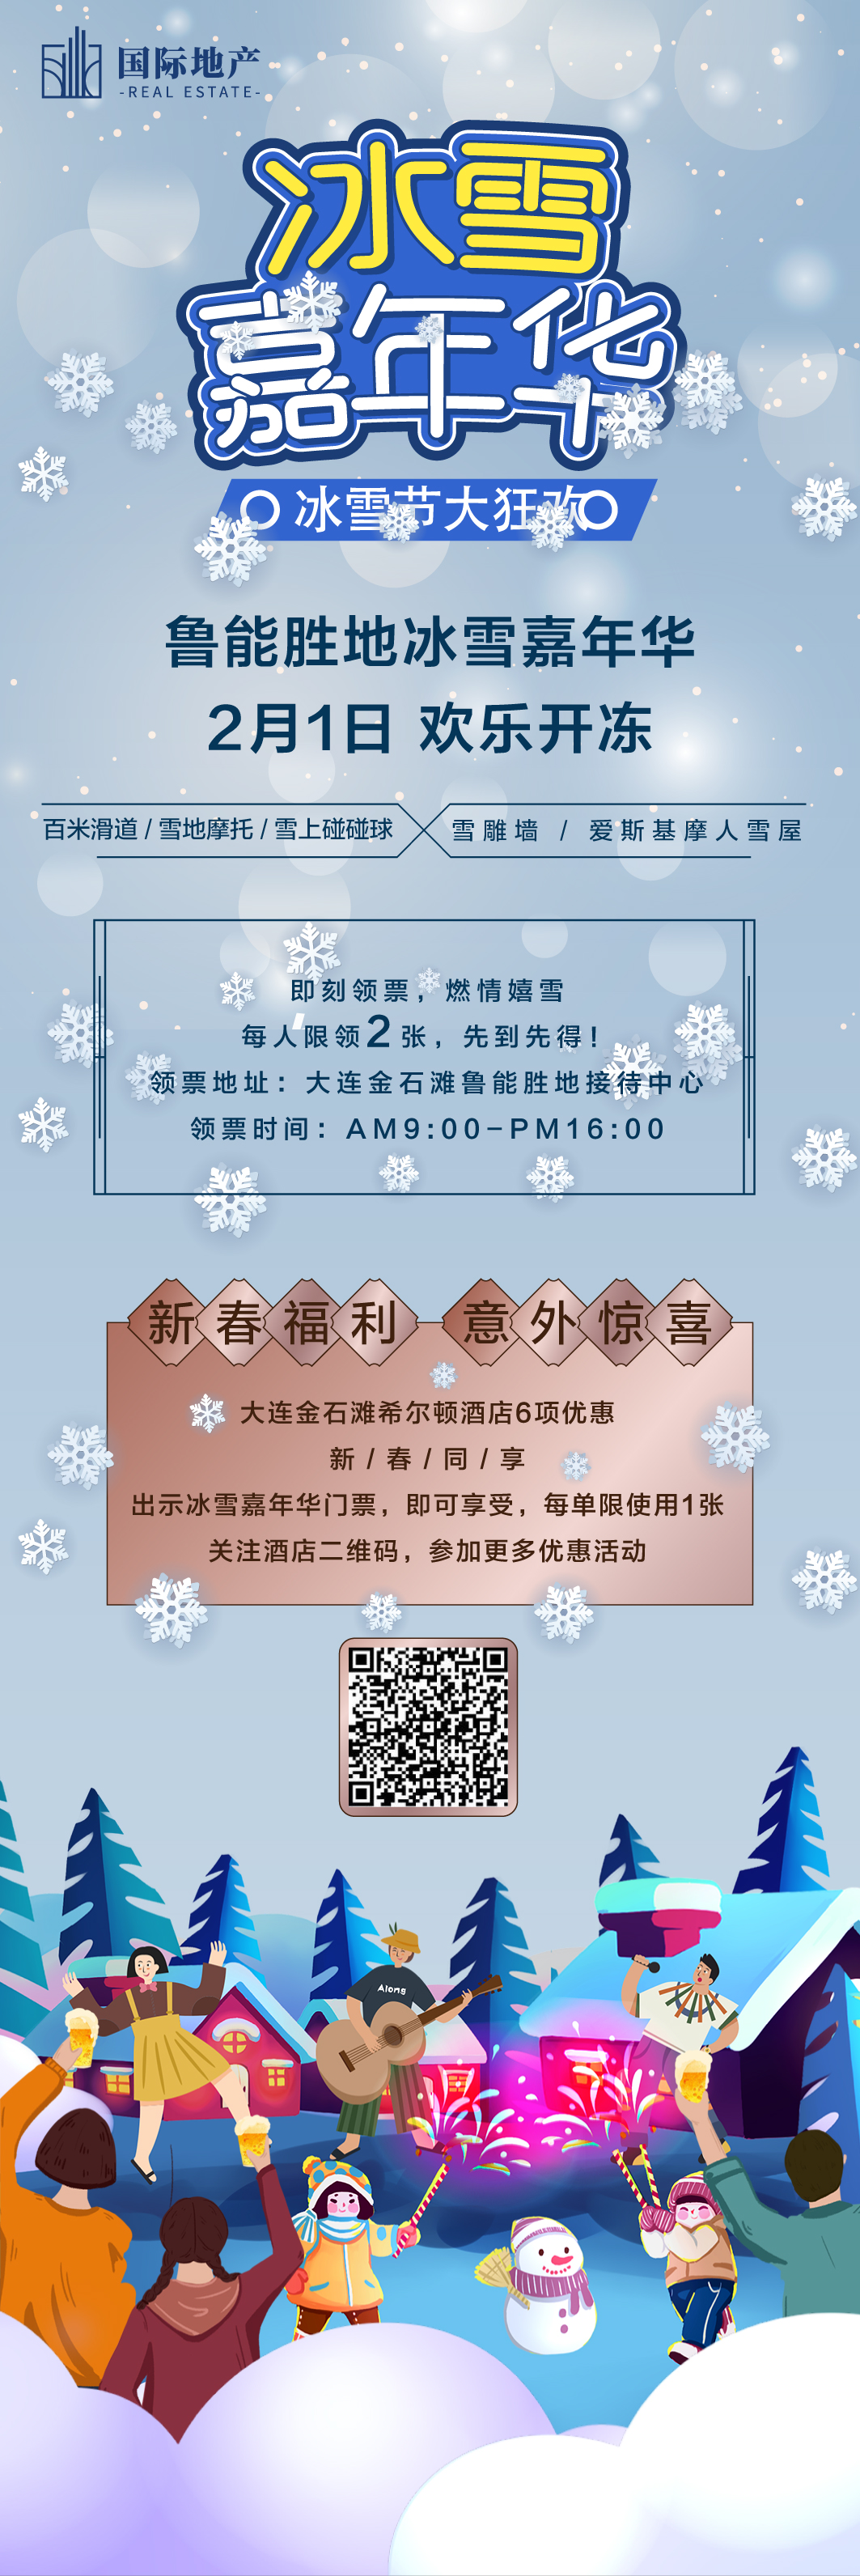 房地产冰雪节嘉年华活动宣传海报长图